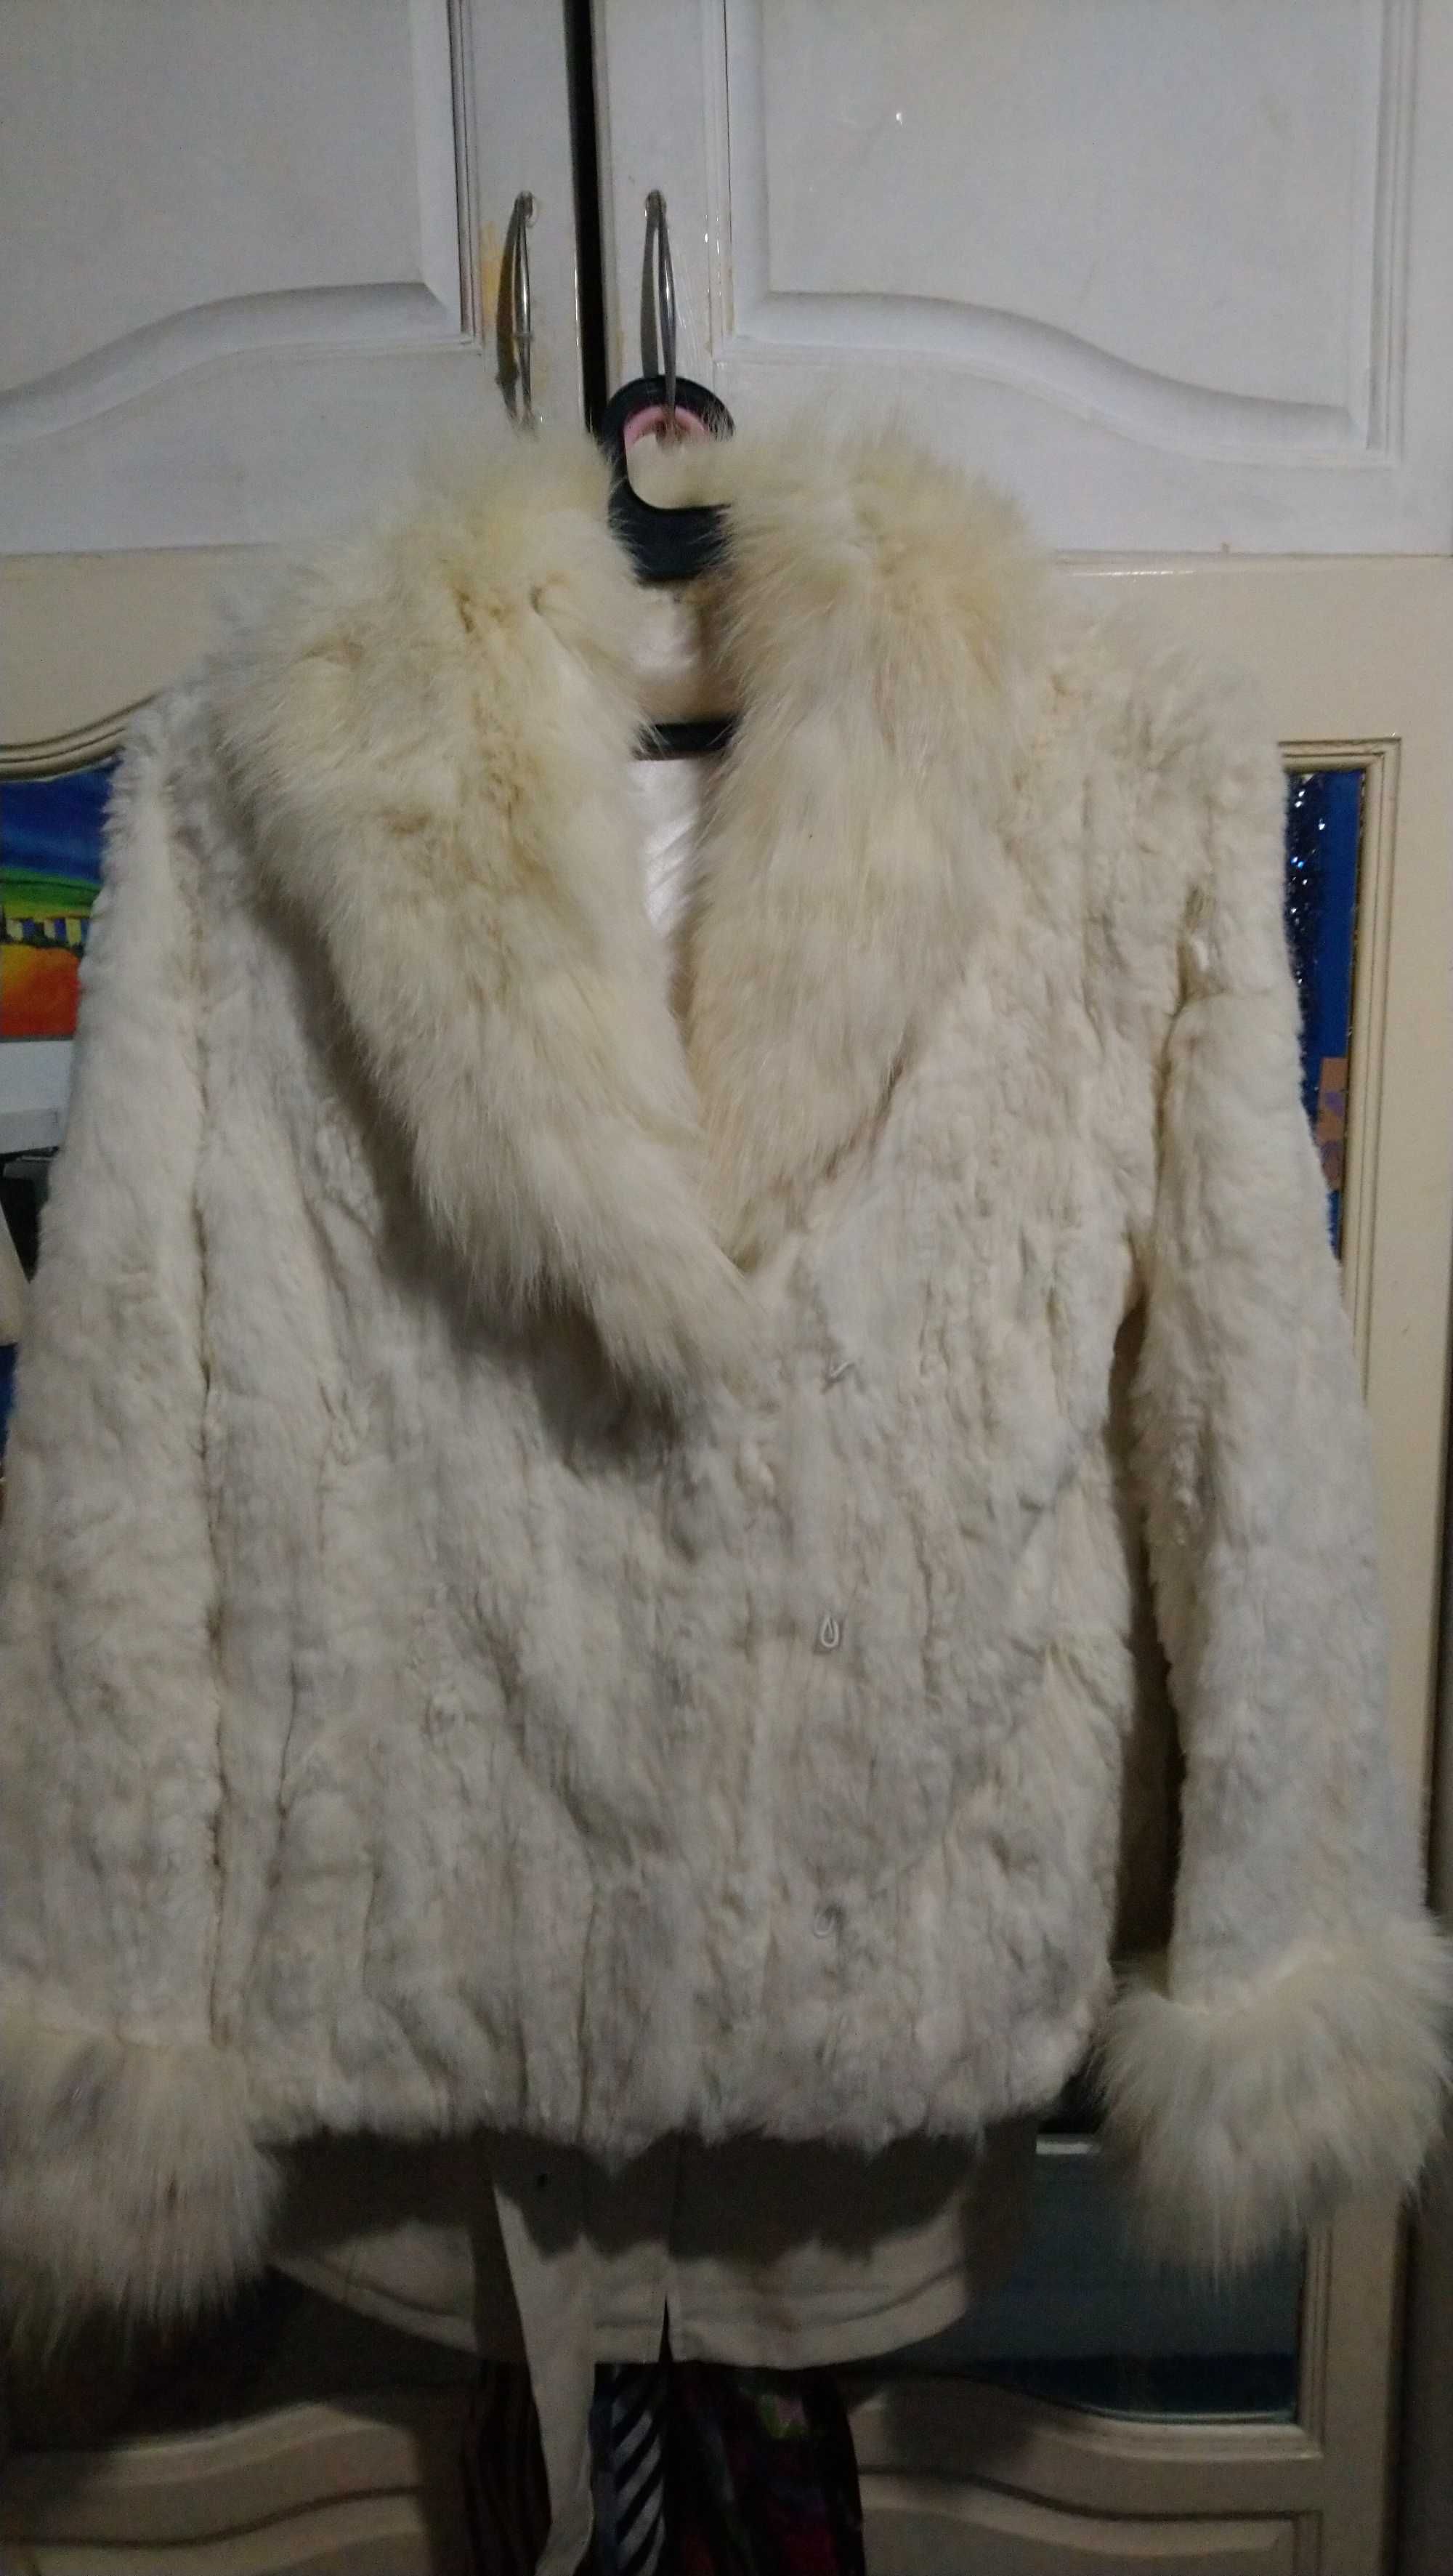 Дамско бяло палто от лисица